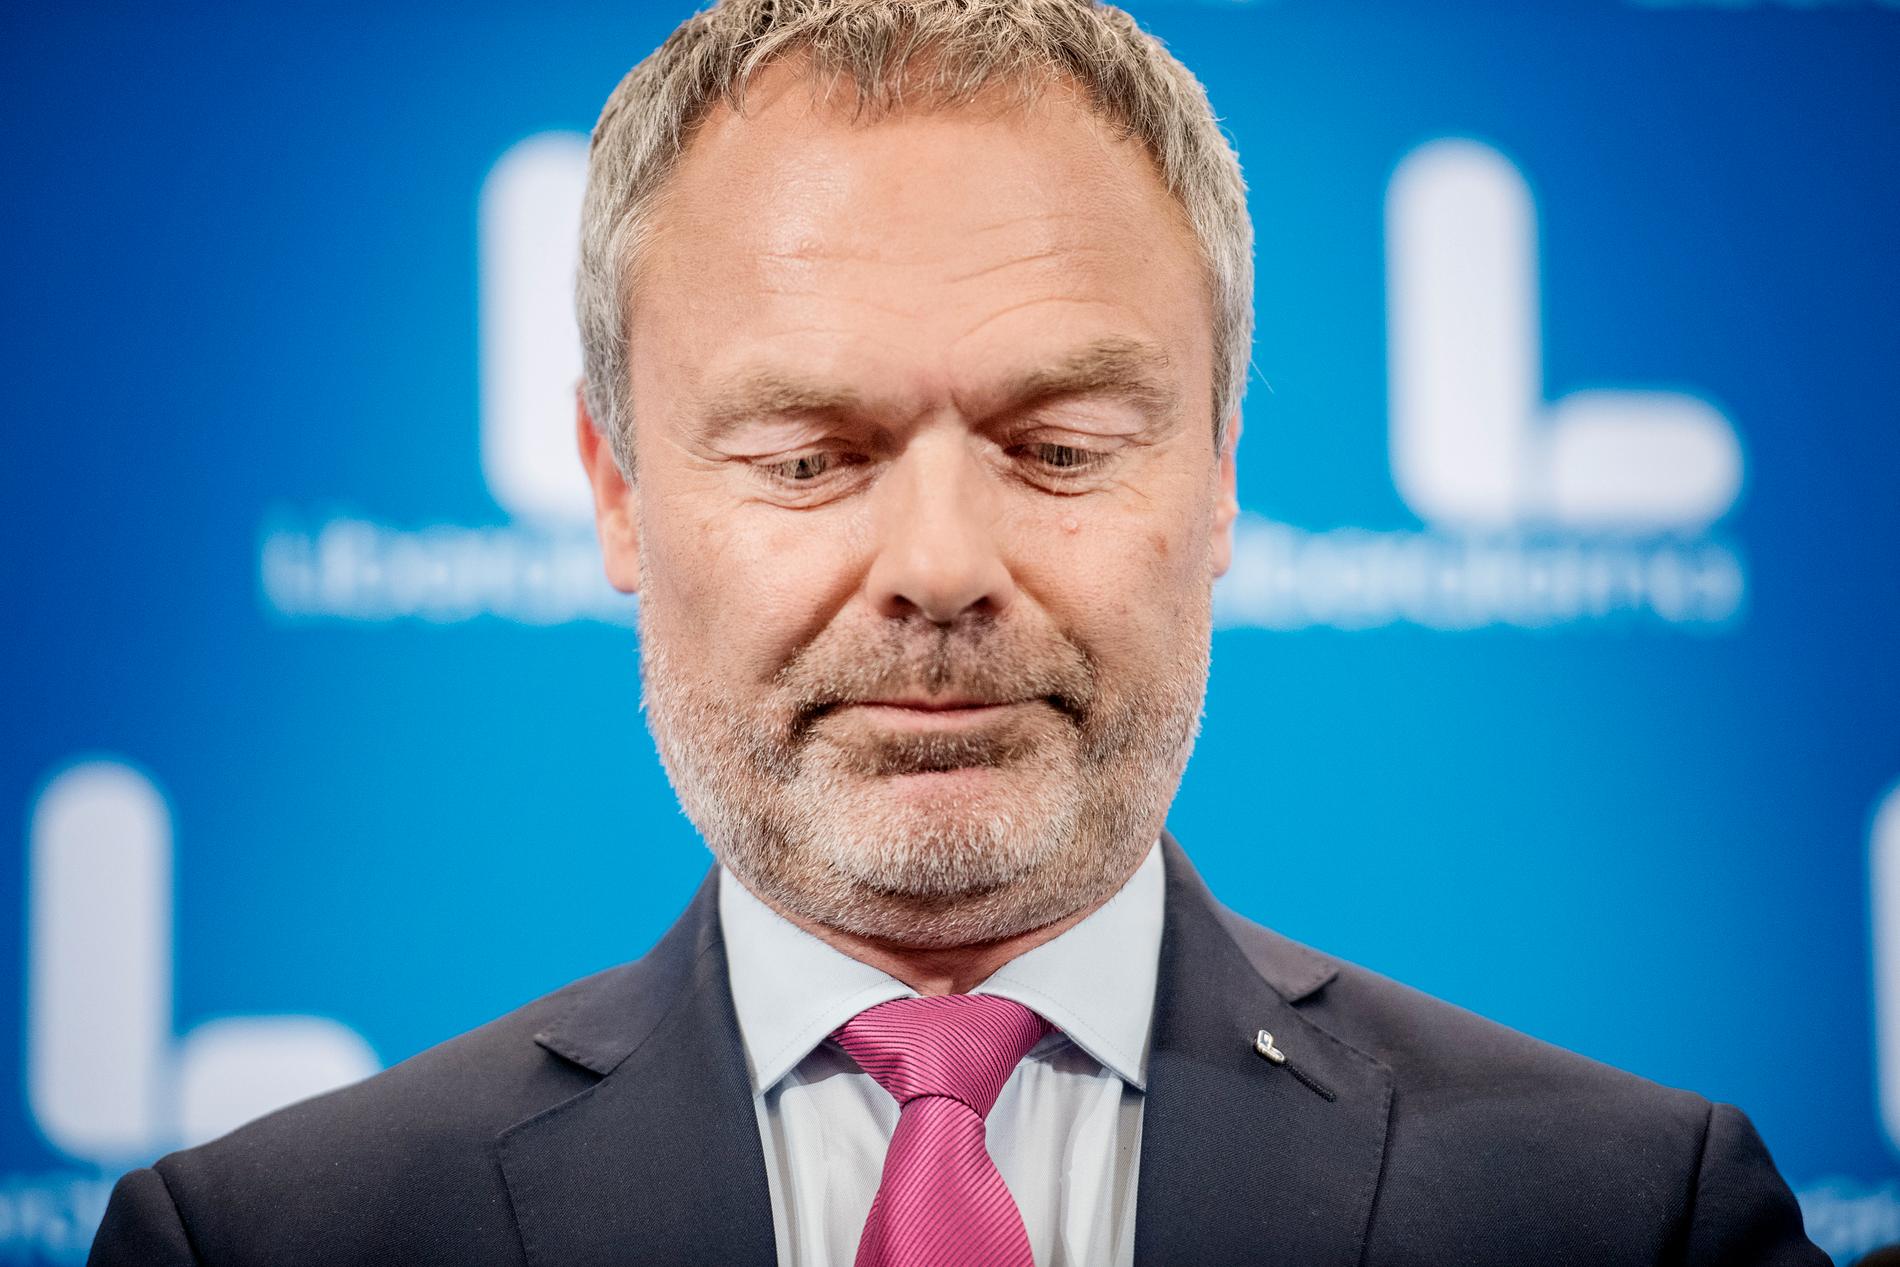 Jan Björklund (L).